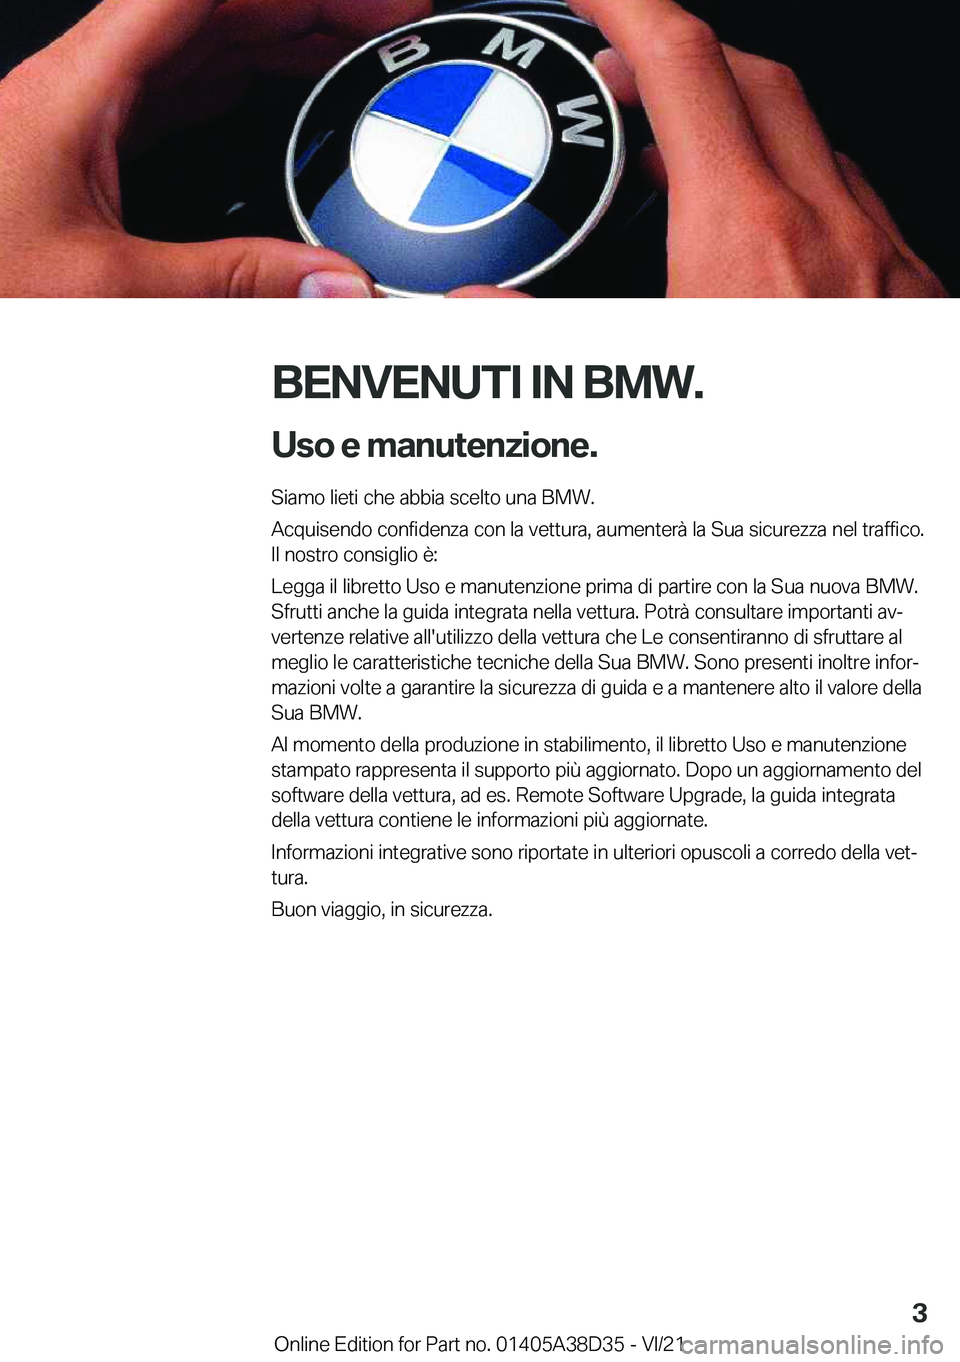 BMW 8 SERIES 2022  Libretti Di Uso E manutenzione (in Italian) �B�E�N�V�E�N�U�T�I��I�N��B�M�W�.�U�s�o��e��m�a�n�u�t�e�n�z�i�o�n�e�.
�S�i�a�m�o��l�i�e�t�i��c�h�e��a�b�b�i�a��s�c�e�l�t�o��u�n�a��B�M�W�.
�A�c�q�u�i�s�e�n�d�o��c�o�n�f�i�d�e�n�z�a��c�o�n�